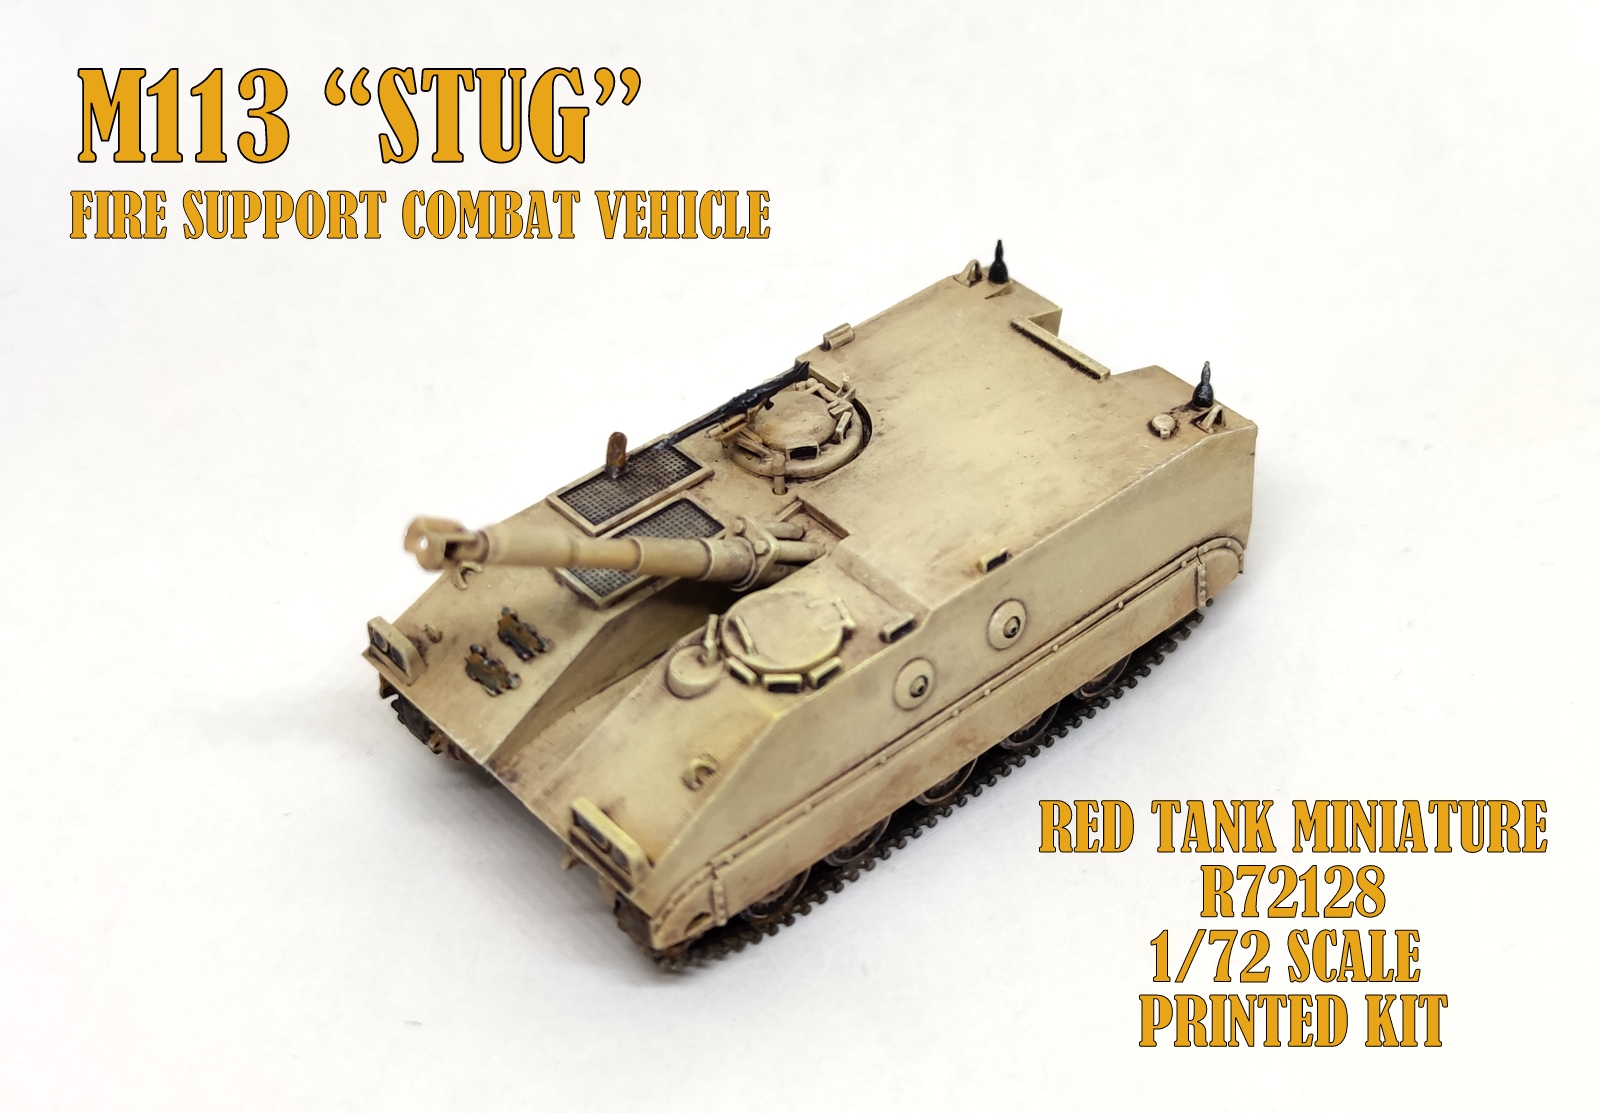 M113 FSCV "M113 Stug"